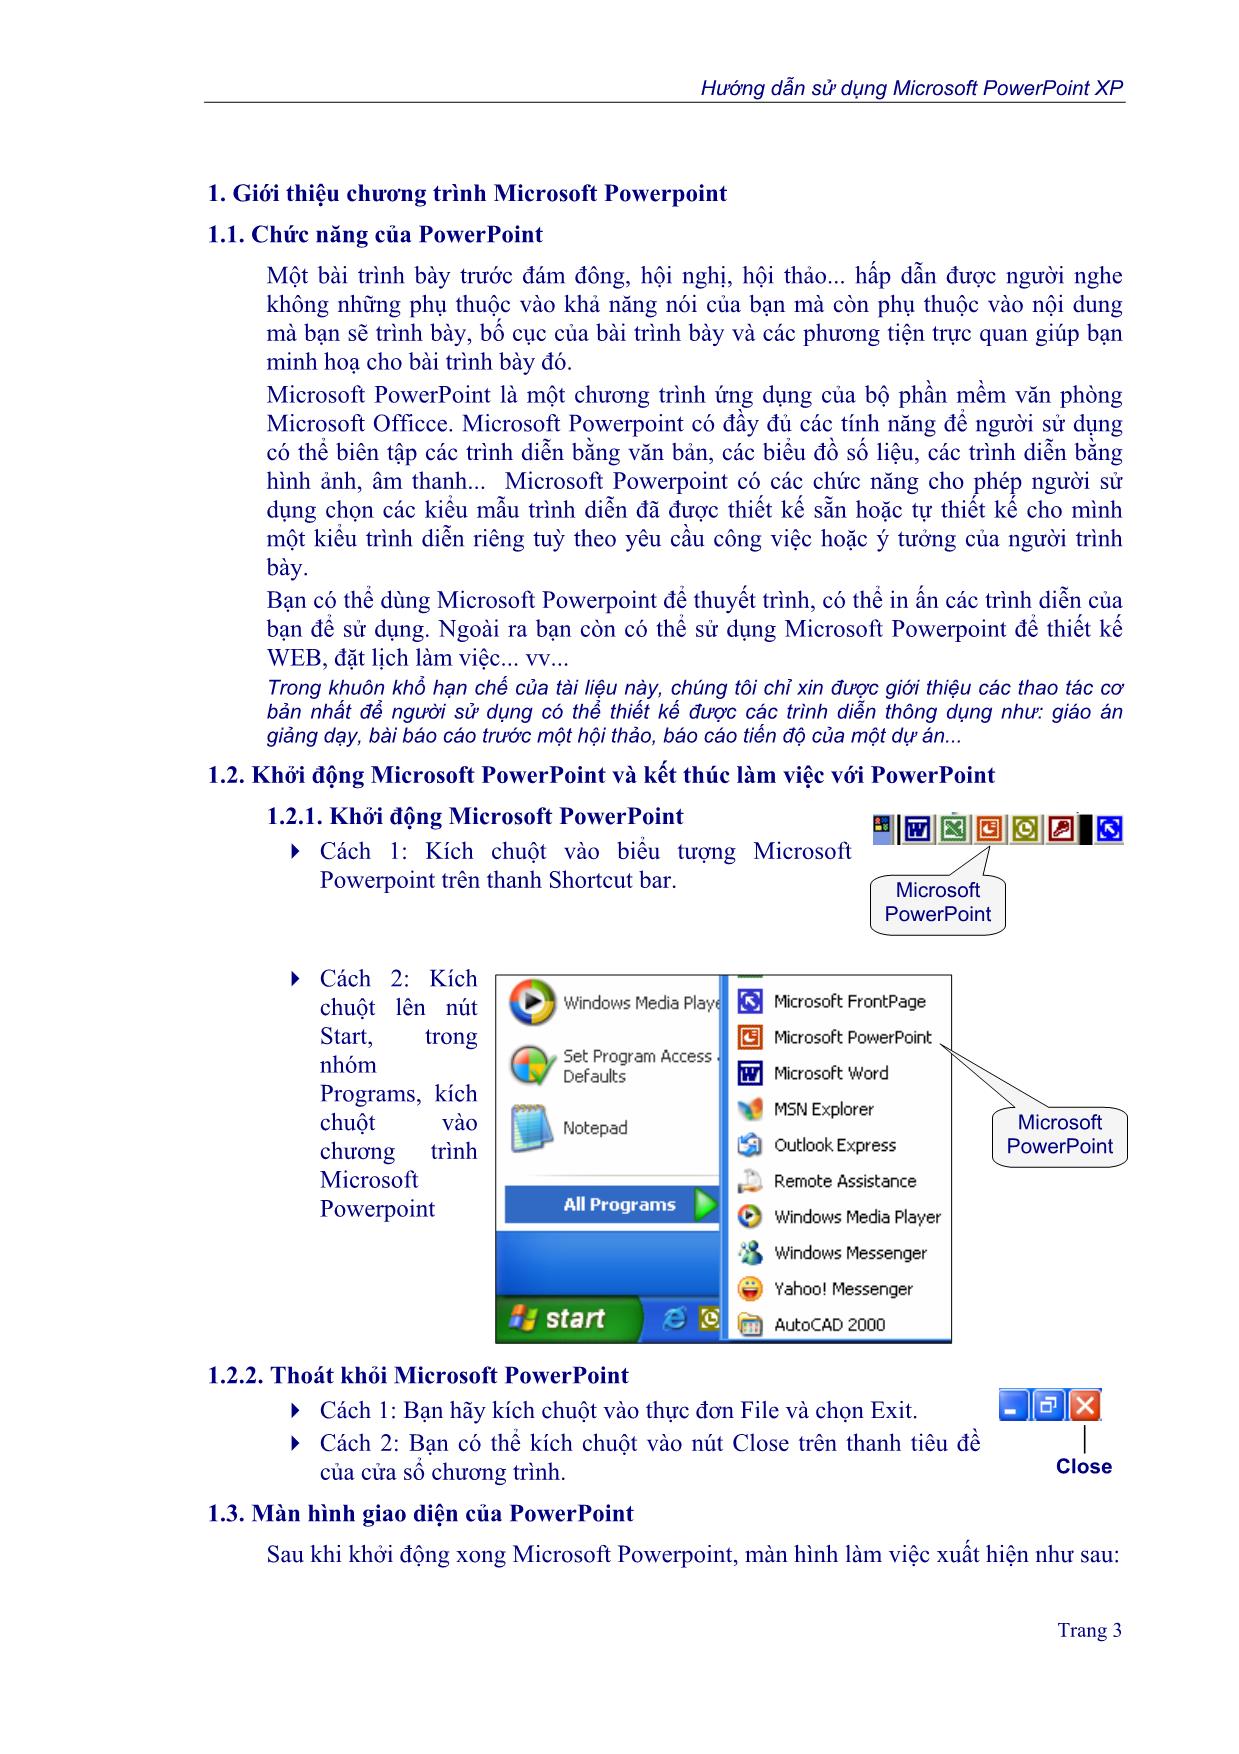 Hướng dẫn sử dụng Micrpsoft Powerpoint XP trang 3